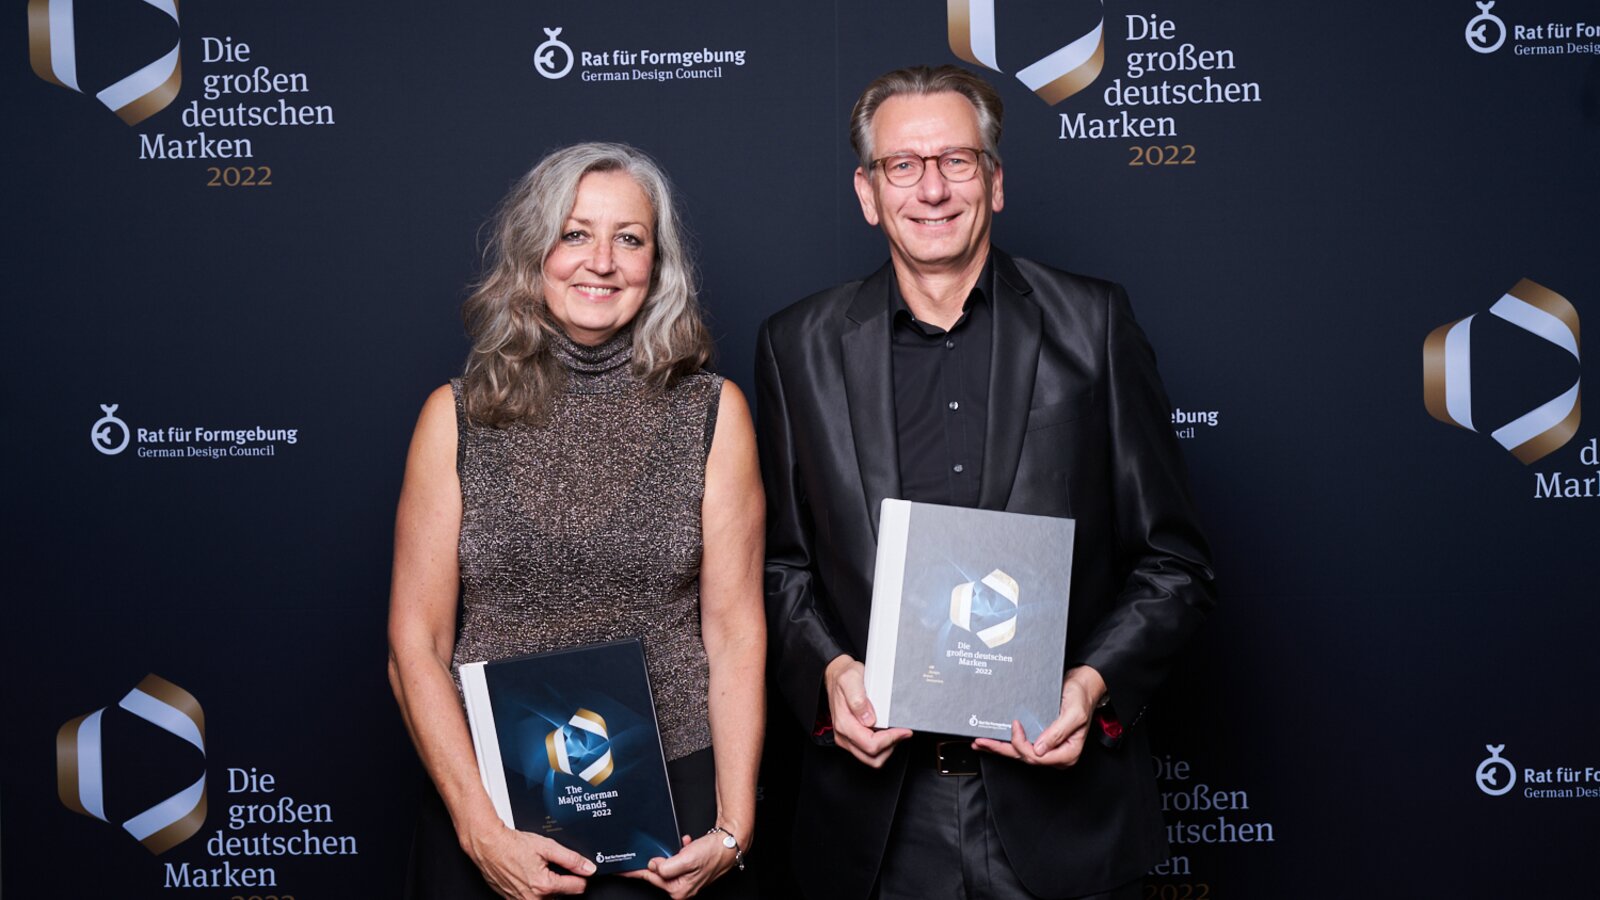 Thorsten Stute und Christiane Küper bei der Preisverleihung die großen deutschen Marken 2022